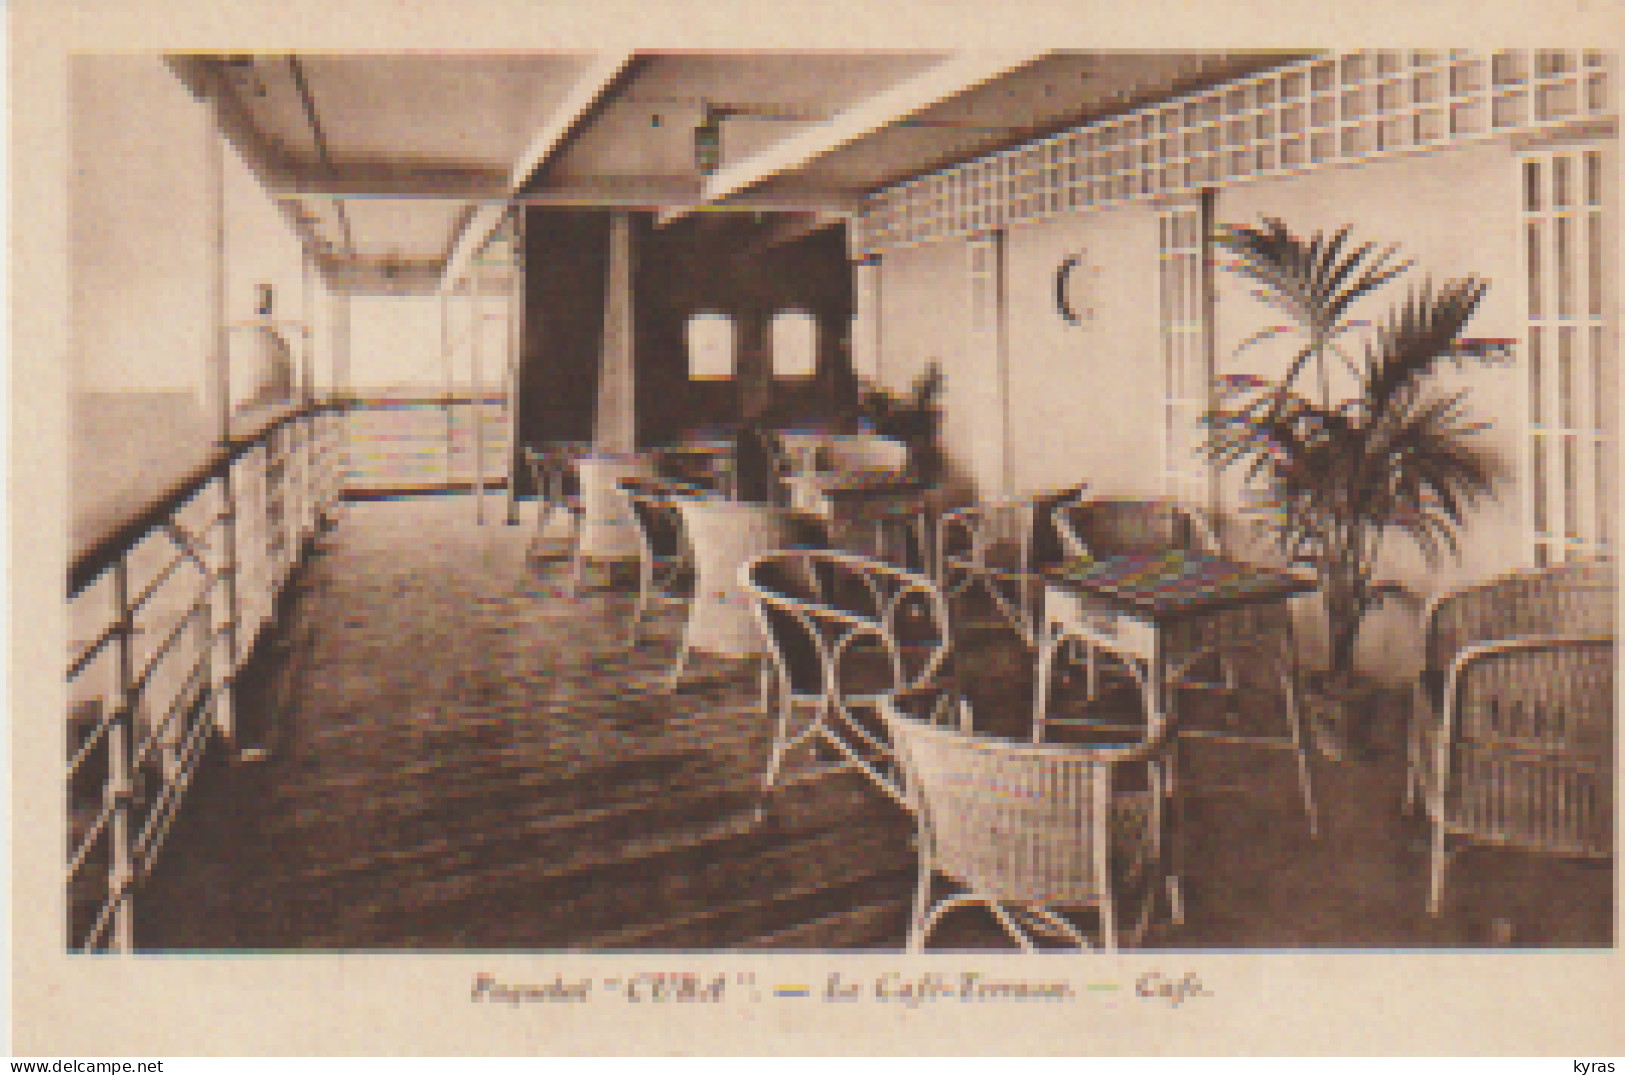 3 Cpa Paquebot " CUBA": 1/ Le Café-terrasse  2/ Fumoir 1ère Classe 3/ Salle à Manger 1ère Classe - Paquebote